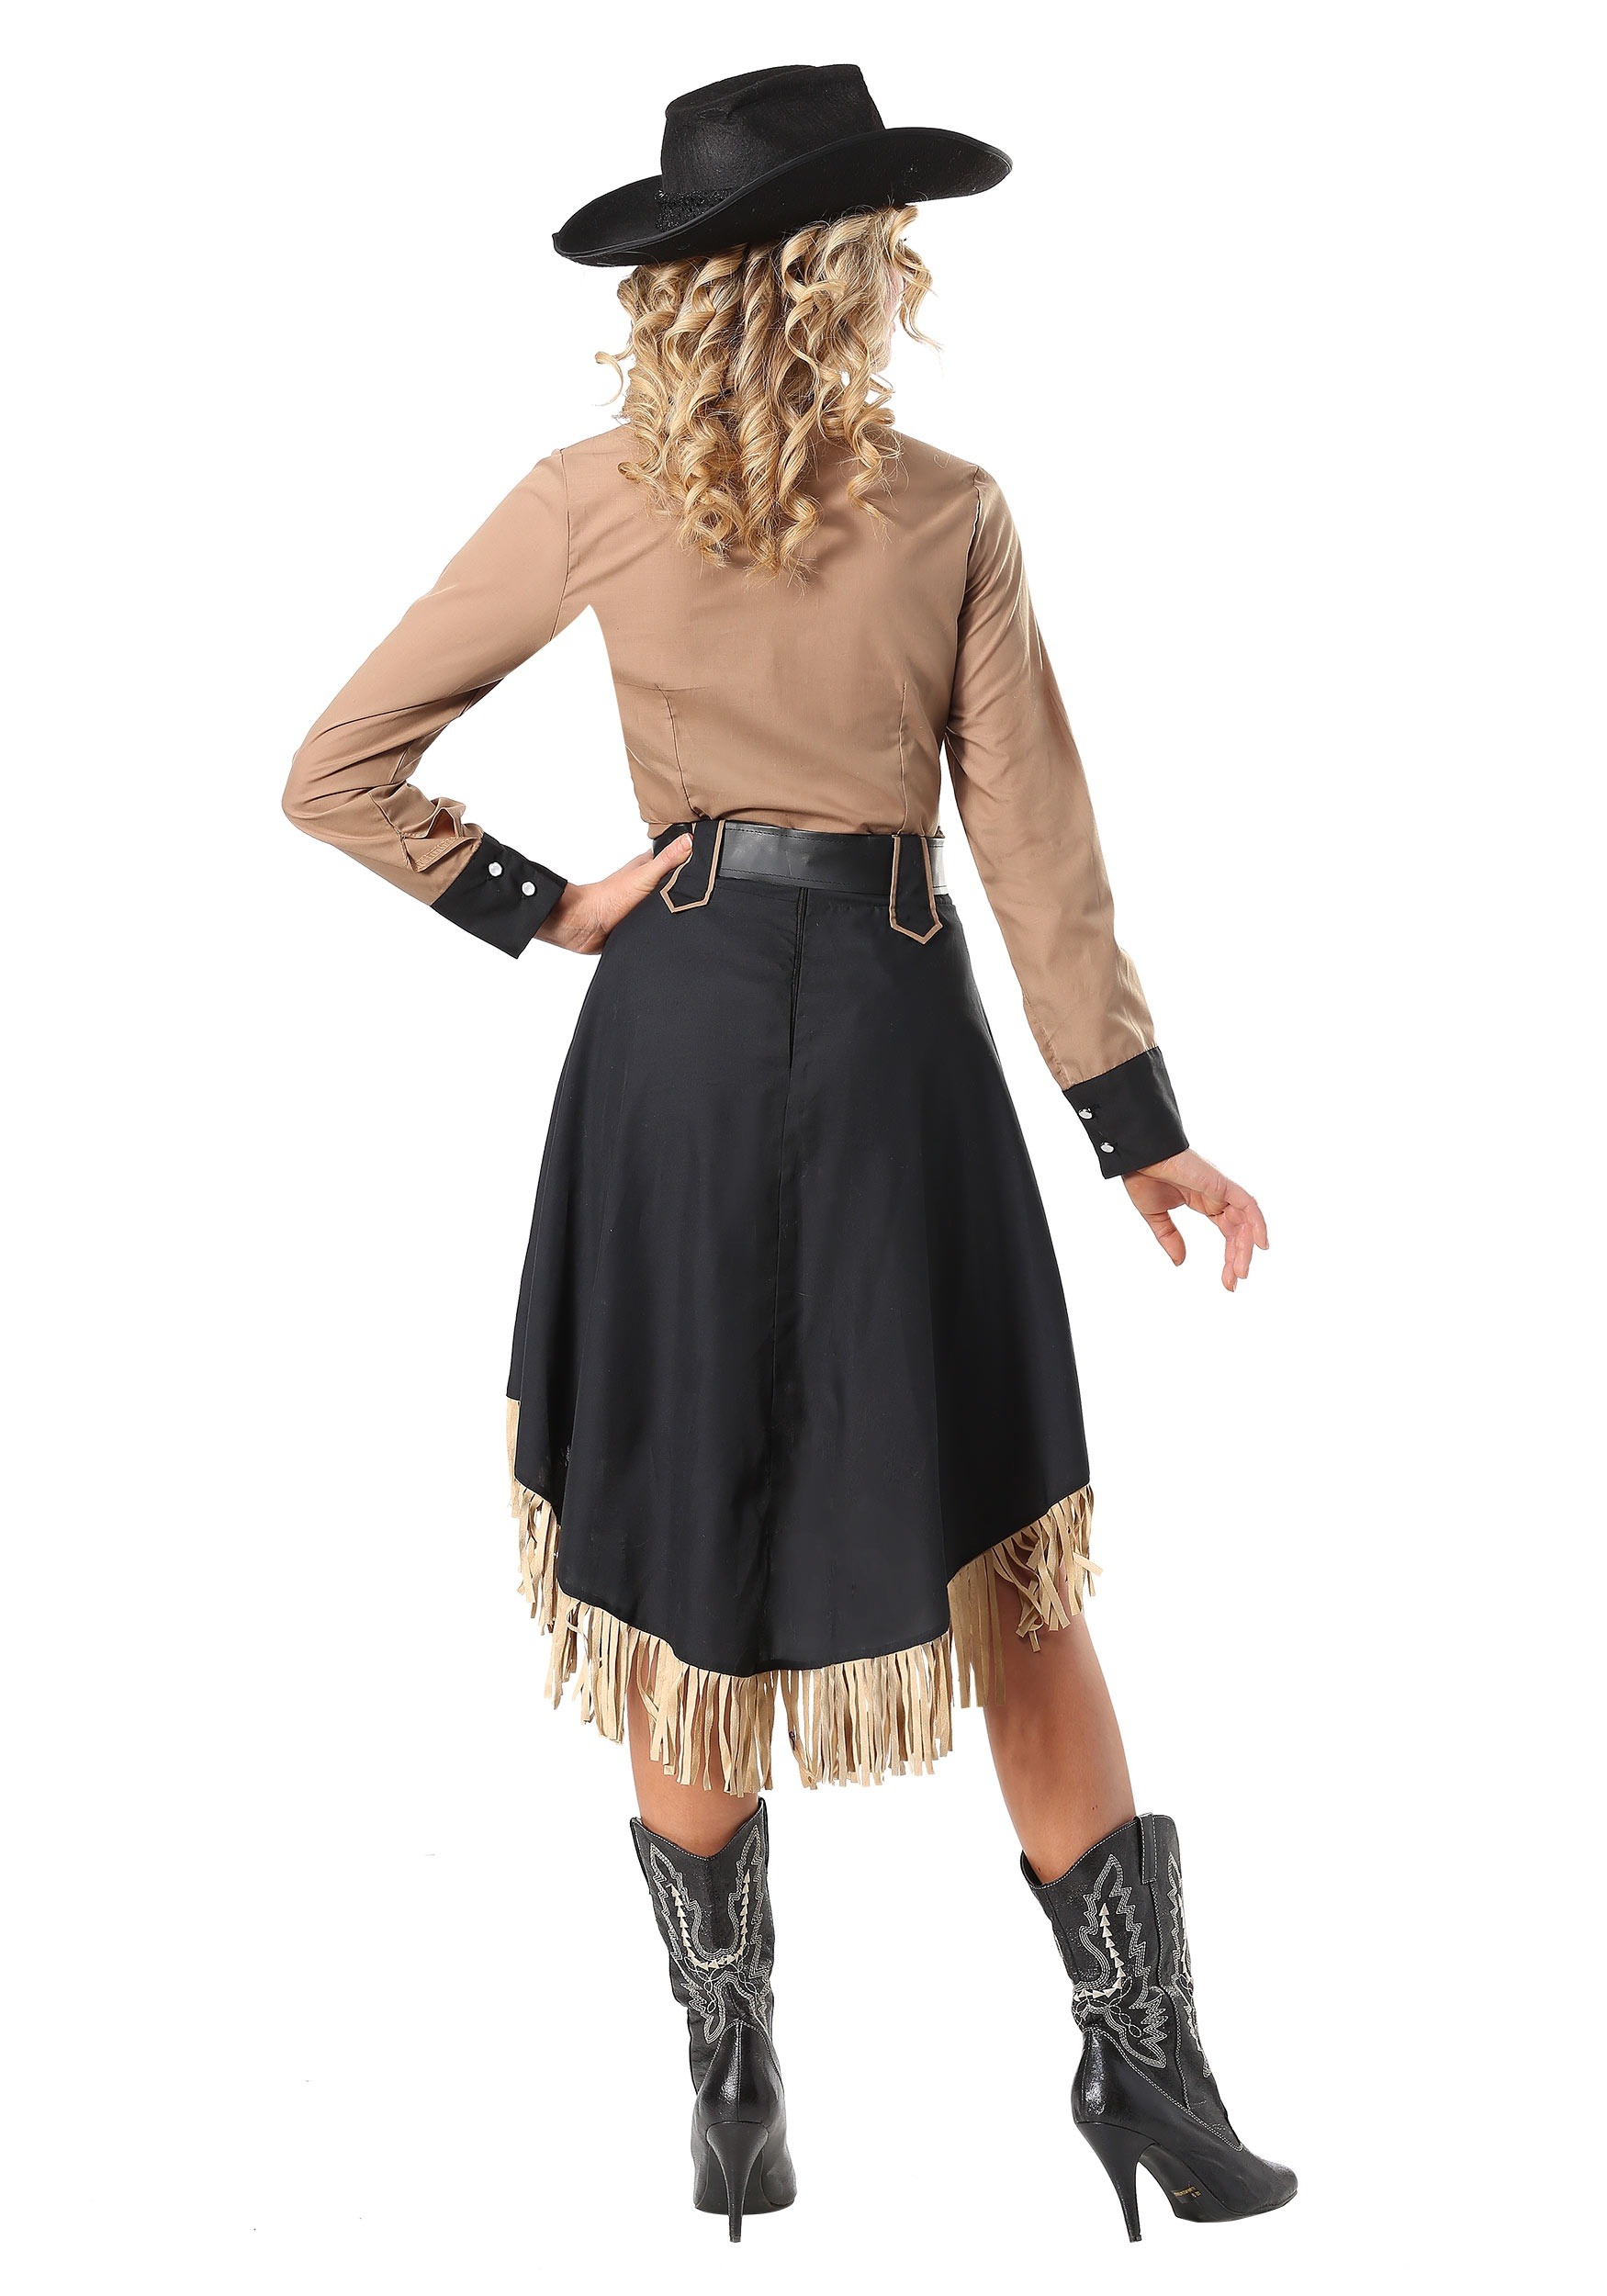 Lasso'n Cowgirl Plus Size Fancy Dress Costume For Women